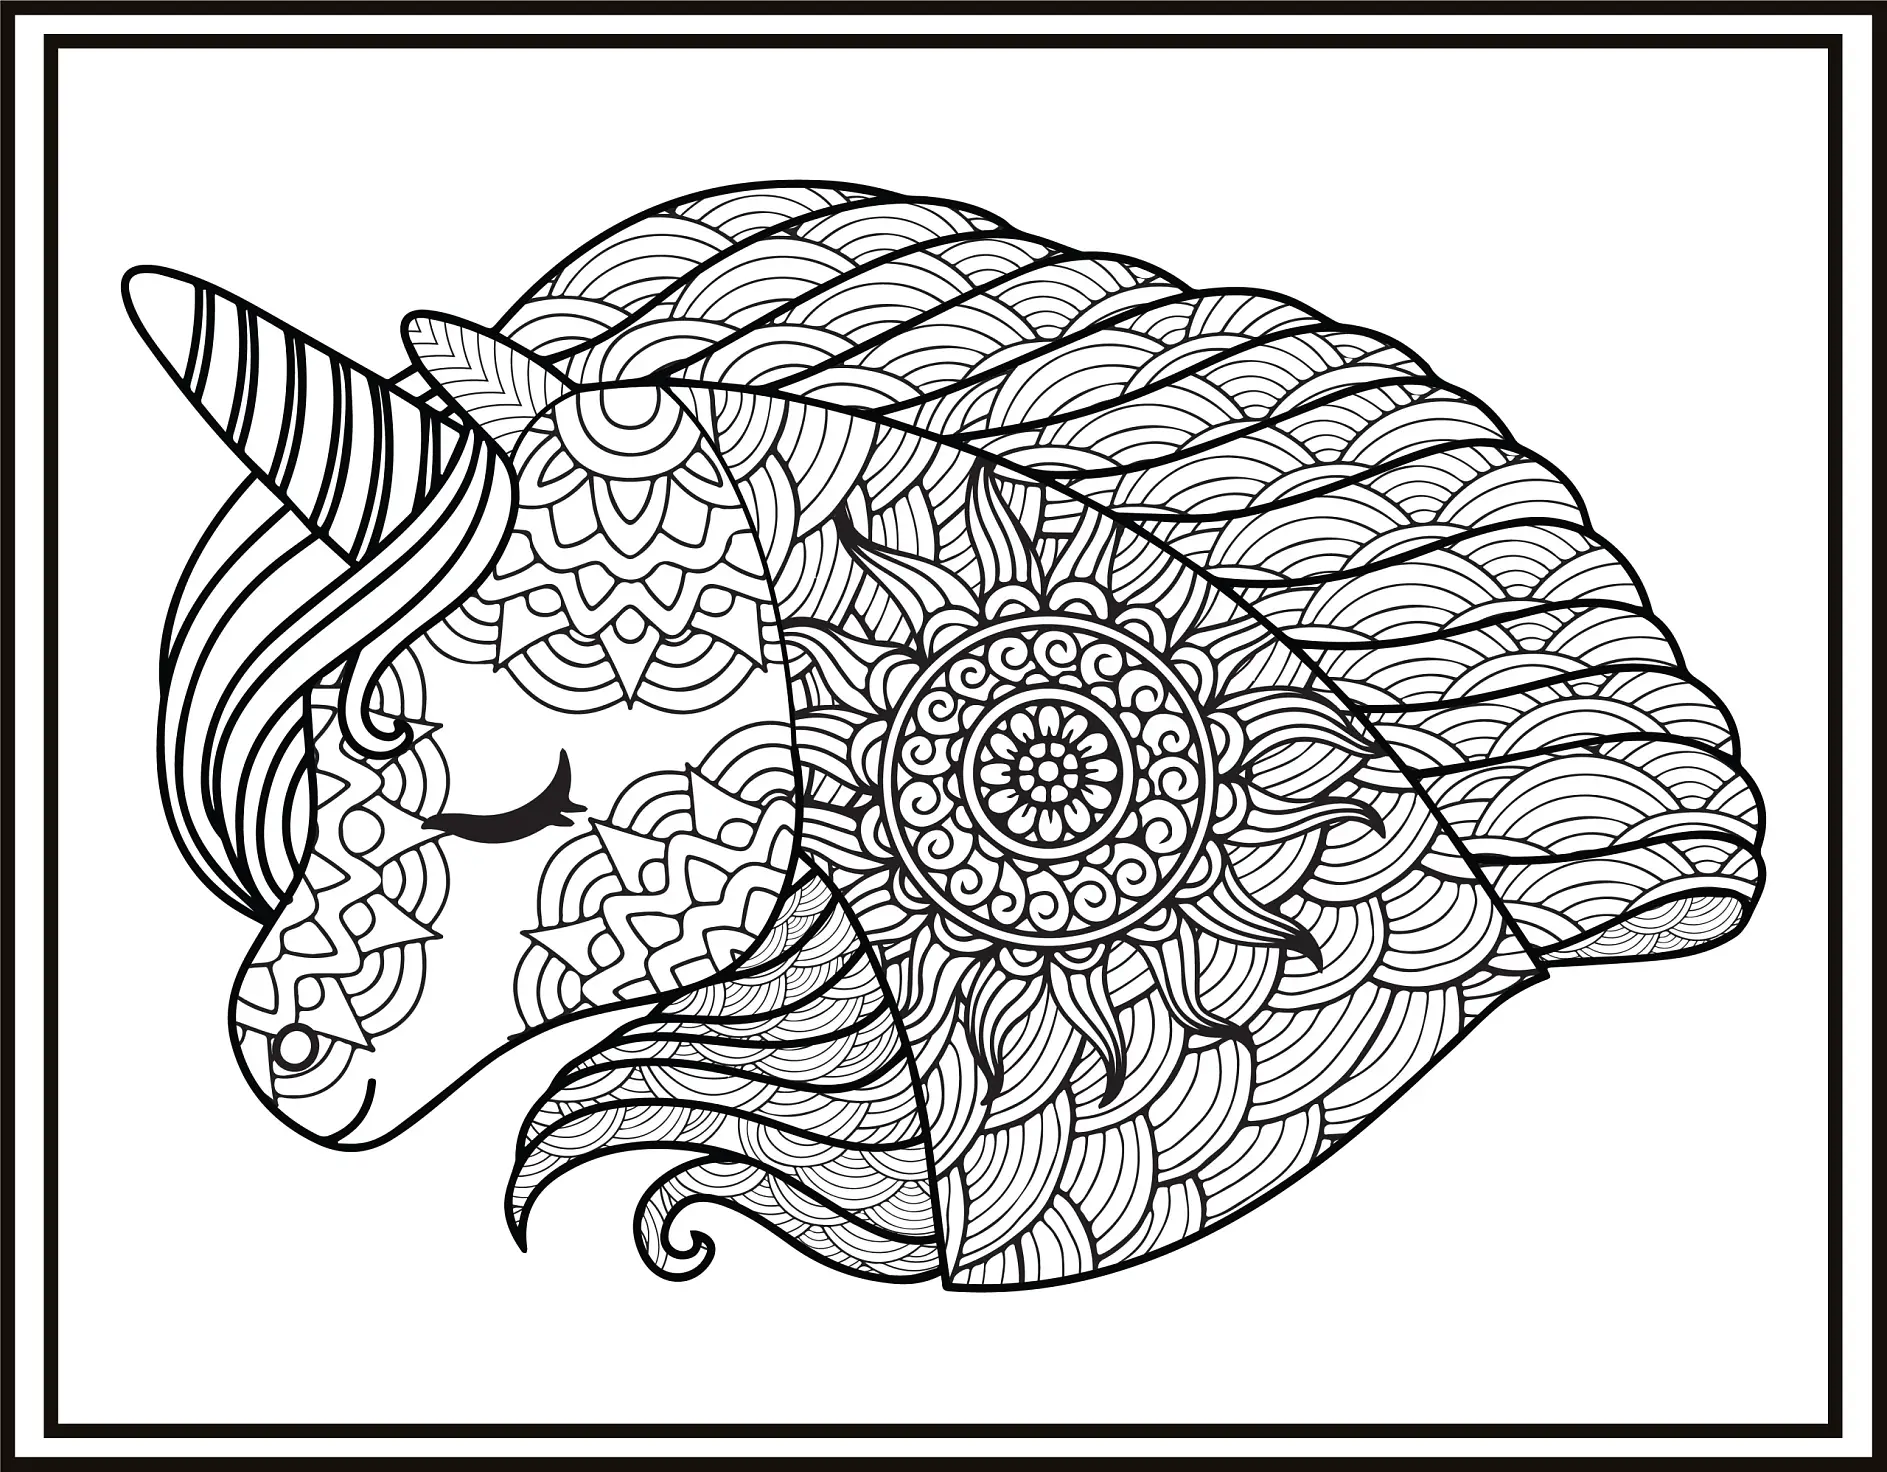 Ausmalbild Mandala schlafendes Einhorn mit filigranem Muster